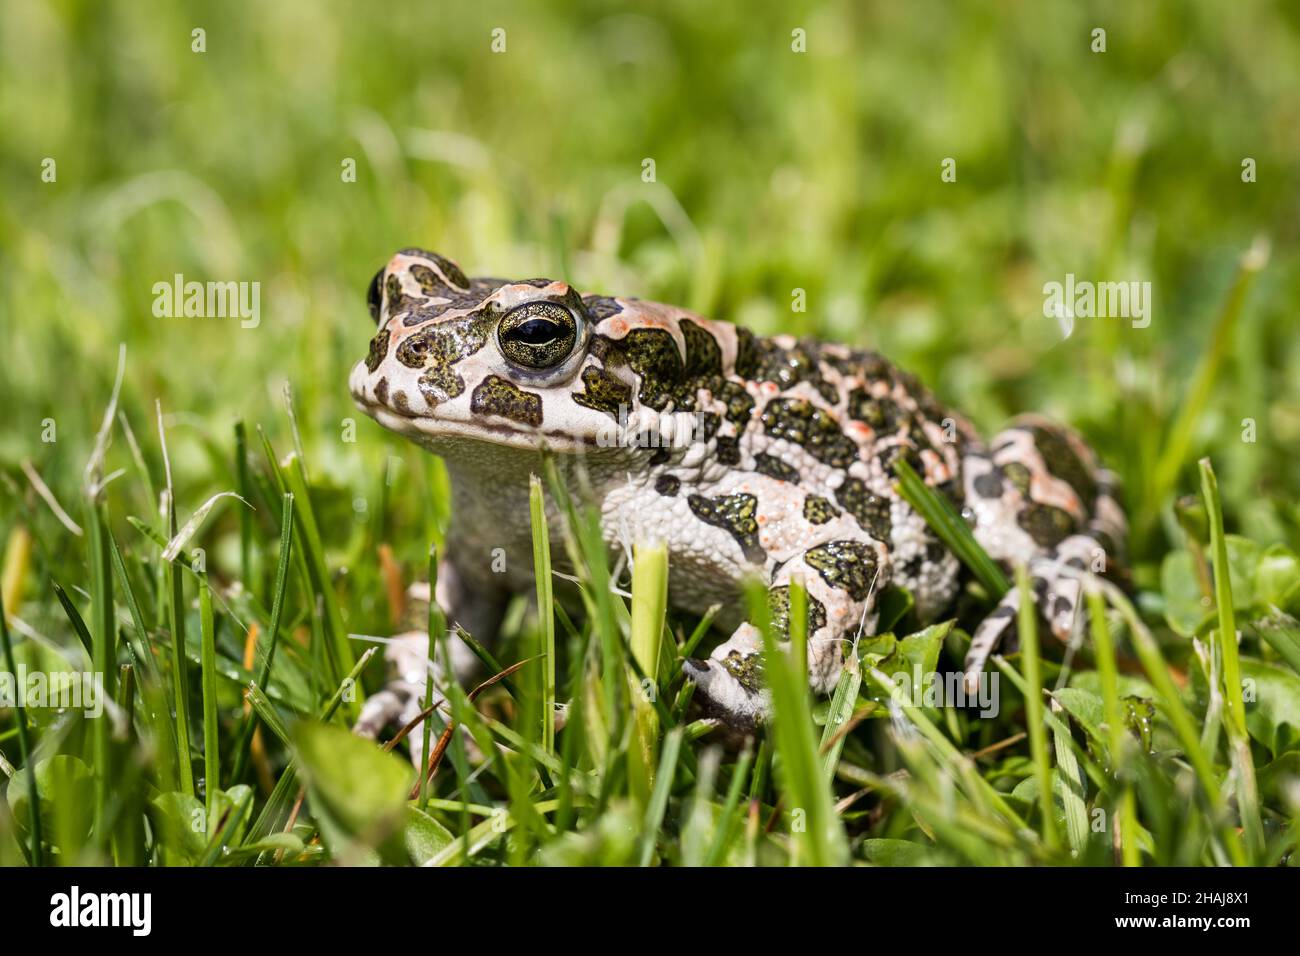 European green toad (Bufotes viridis) in grass. Frog in garden Stock Photo